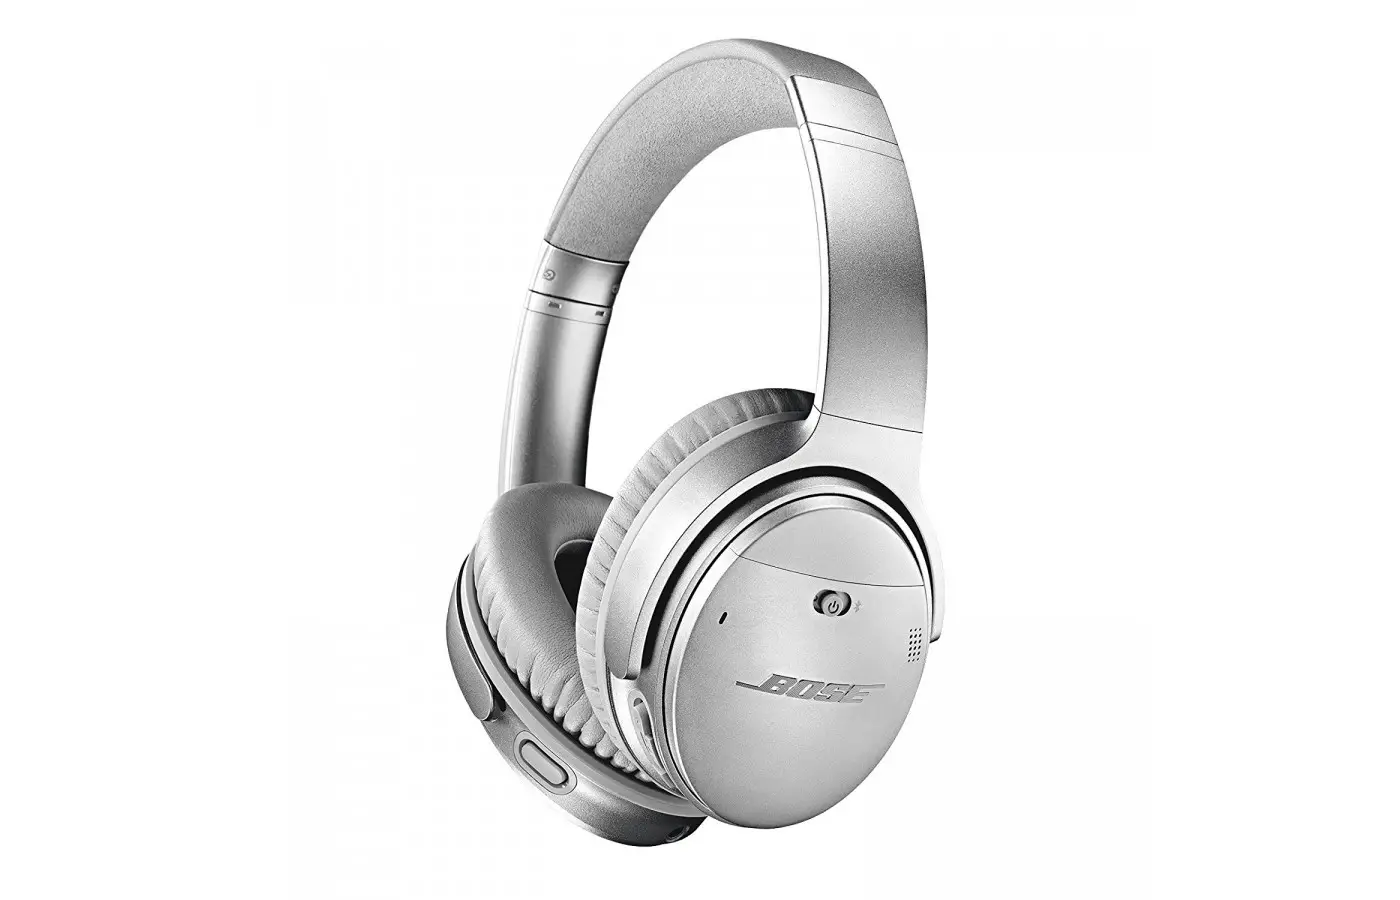 The Bose QuietComfort 35 offers fantastic Bluetooth audio. 